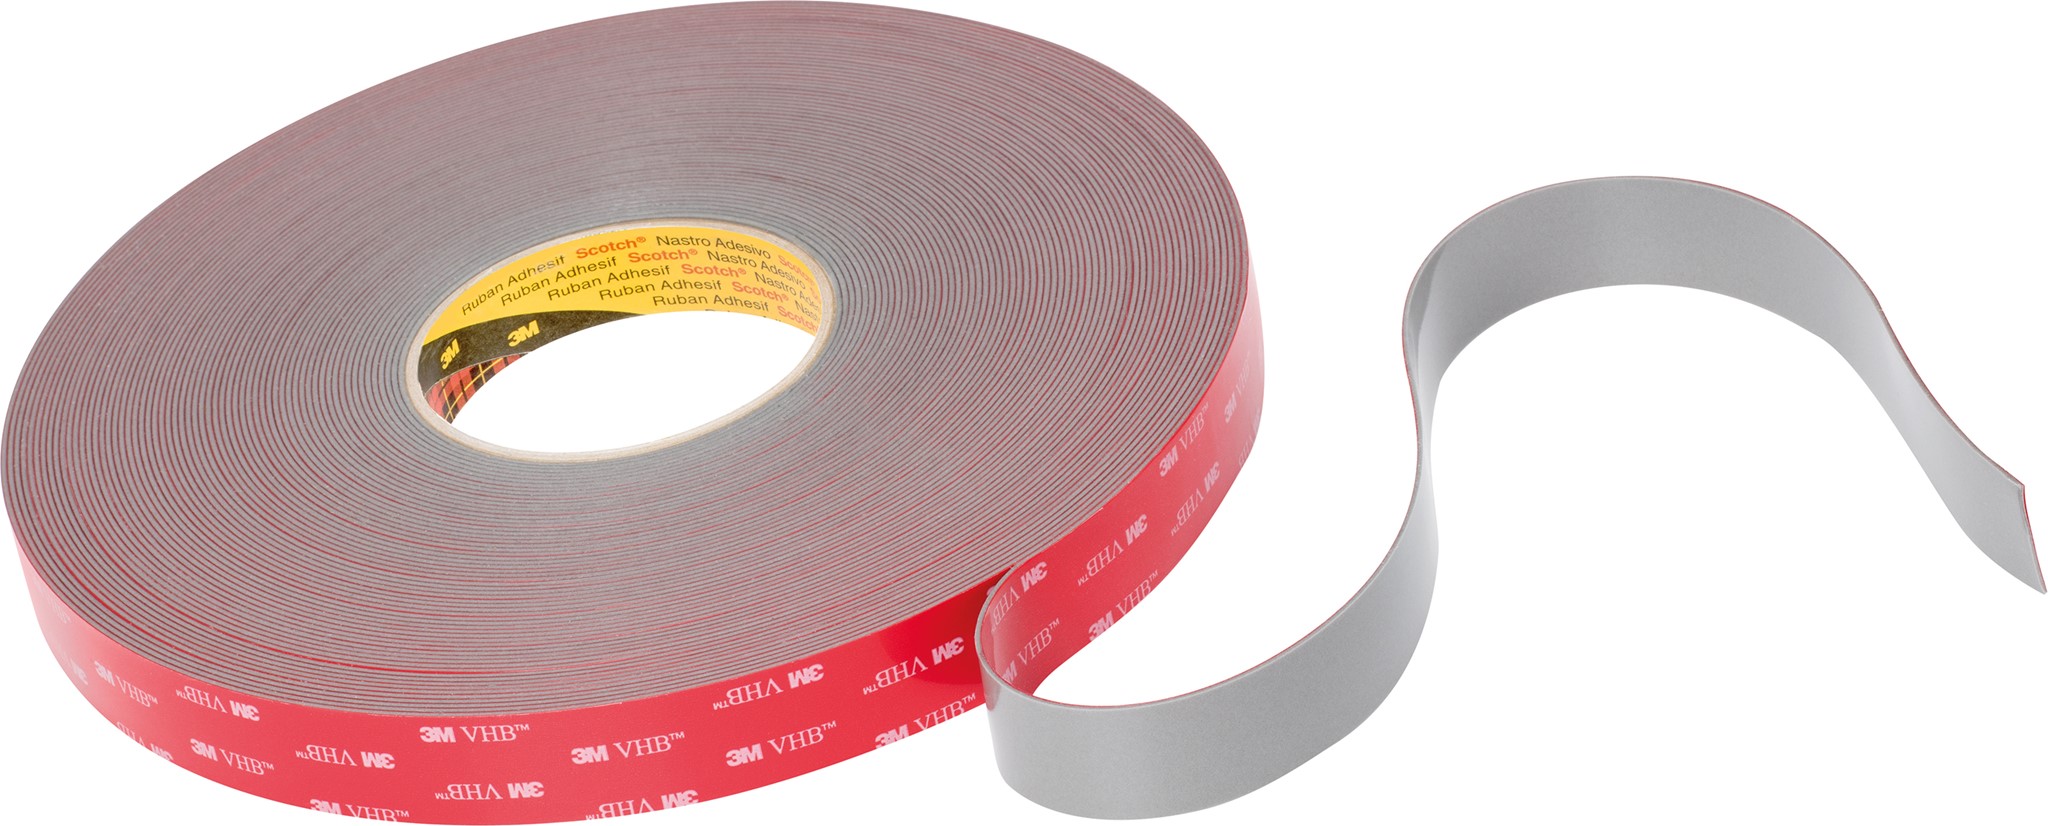 Picture of 3M VHB Tape GPH-110GF grau, 25mm x 33m, 1.1mm